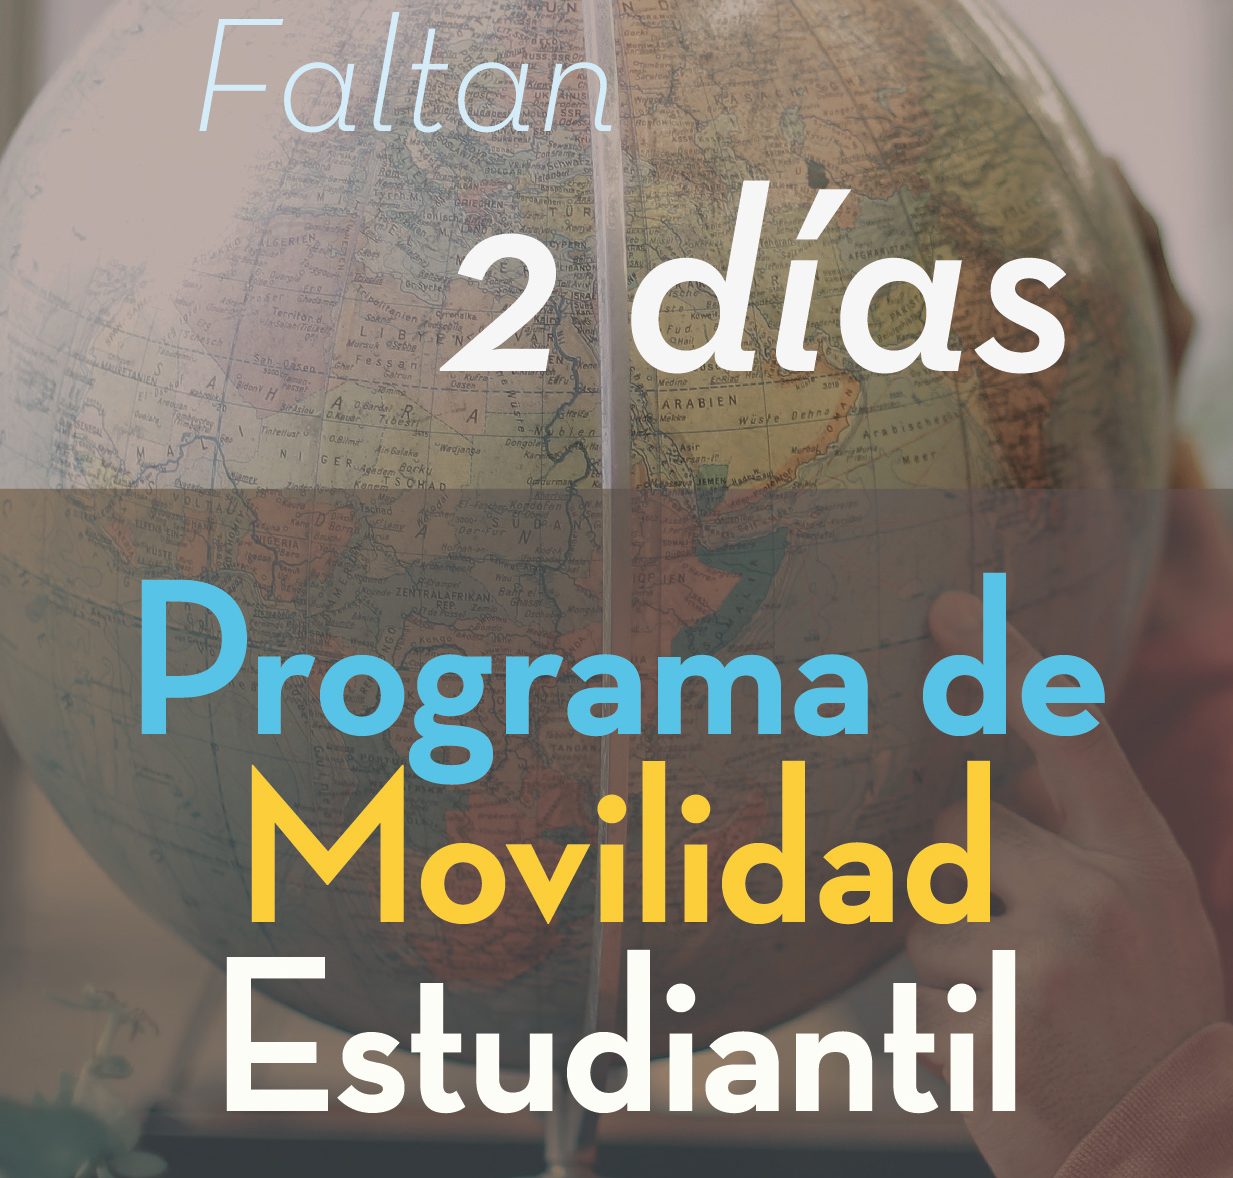 ¡ATENCIÓN ESTUDIANTES UCB y Epc! Faltan 2 días para la publicación de la convocatoria del Programa de Movilidad Estudiantil UCB por el Mundo para el Semestre 2-2022.